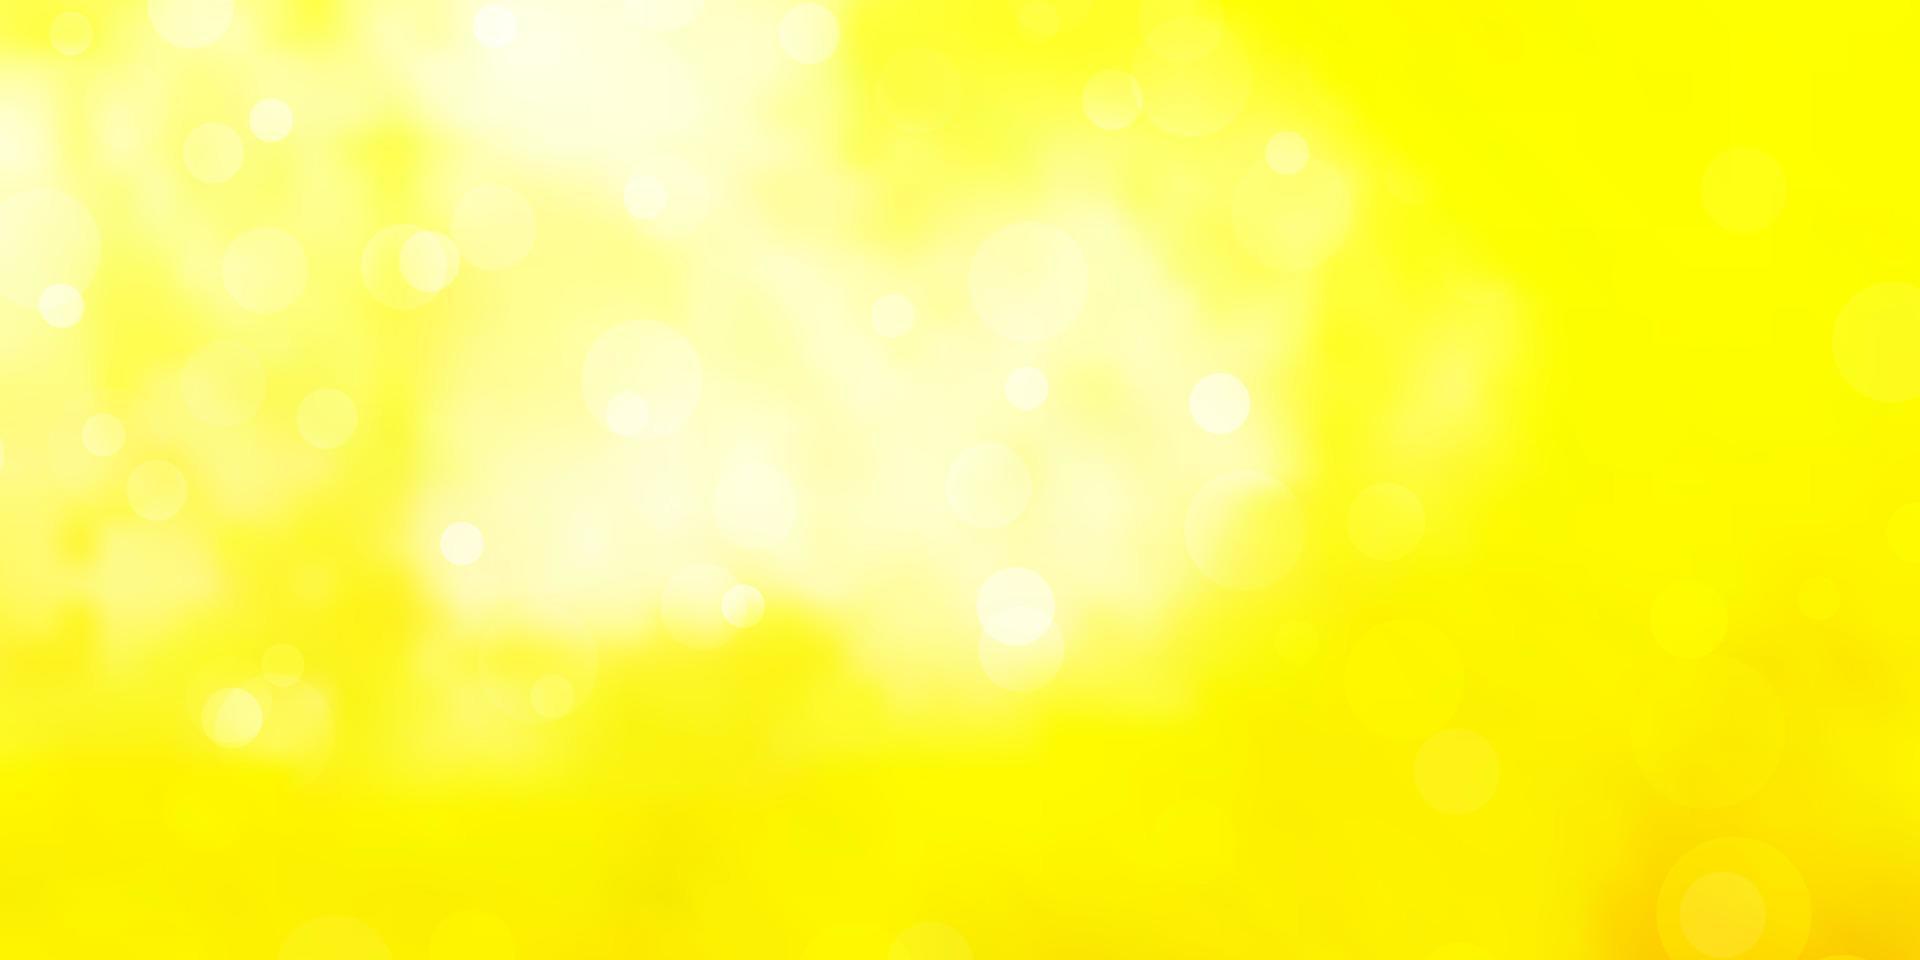 ljus gul vektor bakgrund med cirklar.